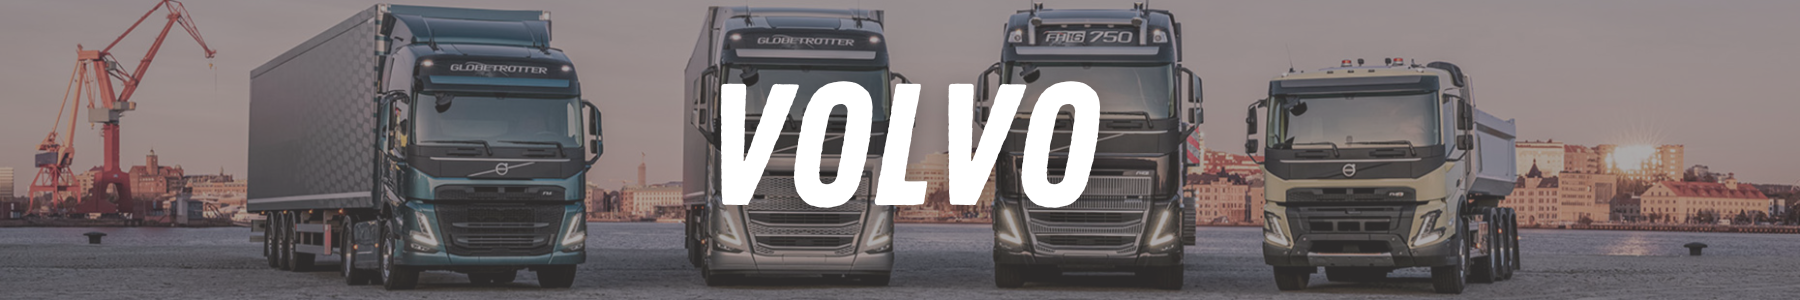 22H22 - Accessoires et tuning pour votre camion poids-lourd Volvo